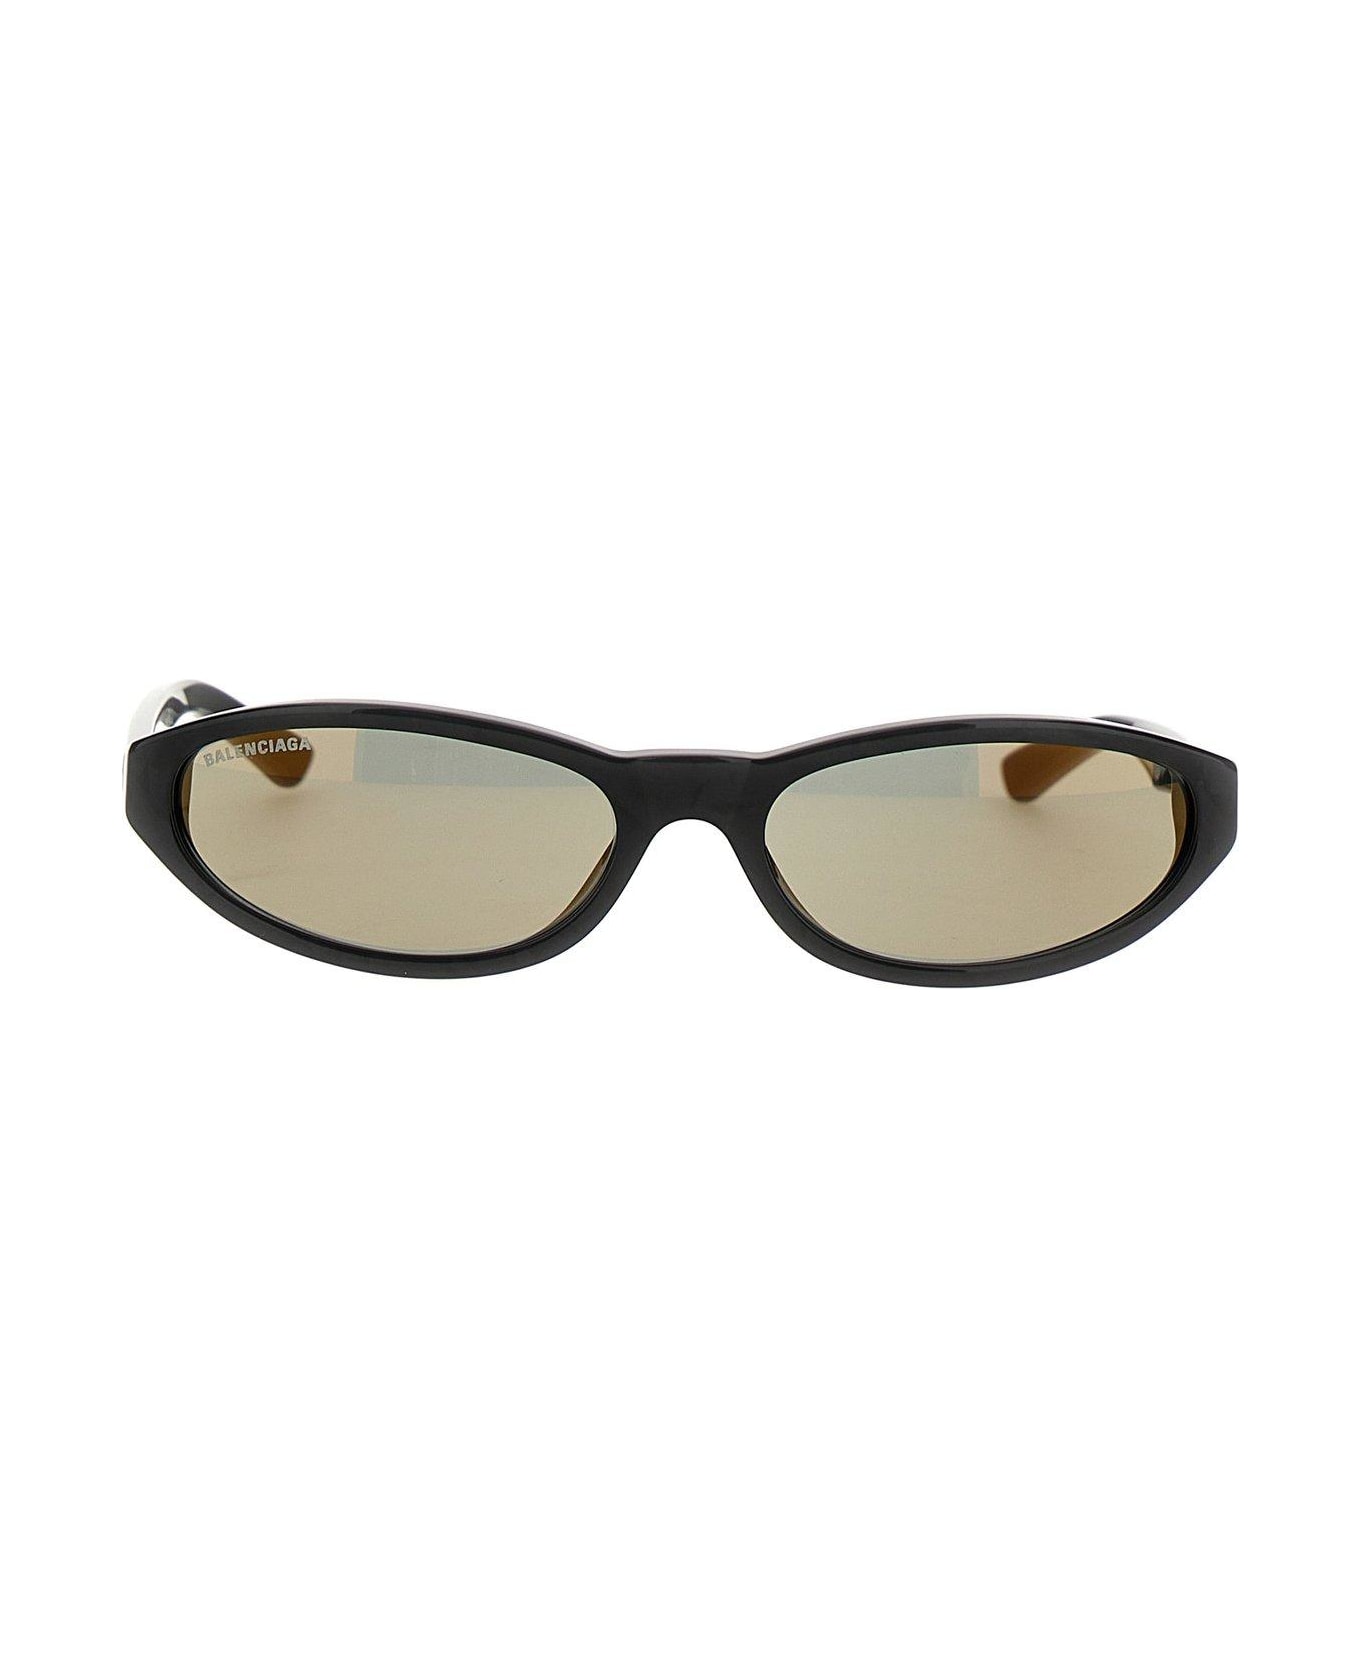 Balenciaga Neo Round Sunglasses - Black Pearl/mirr